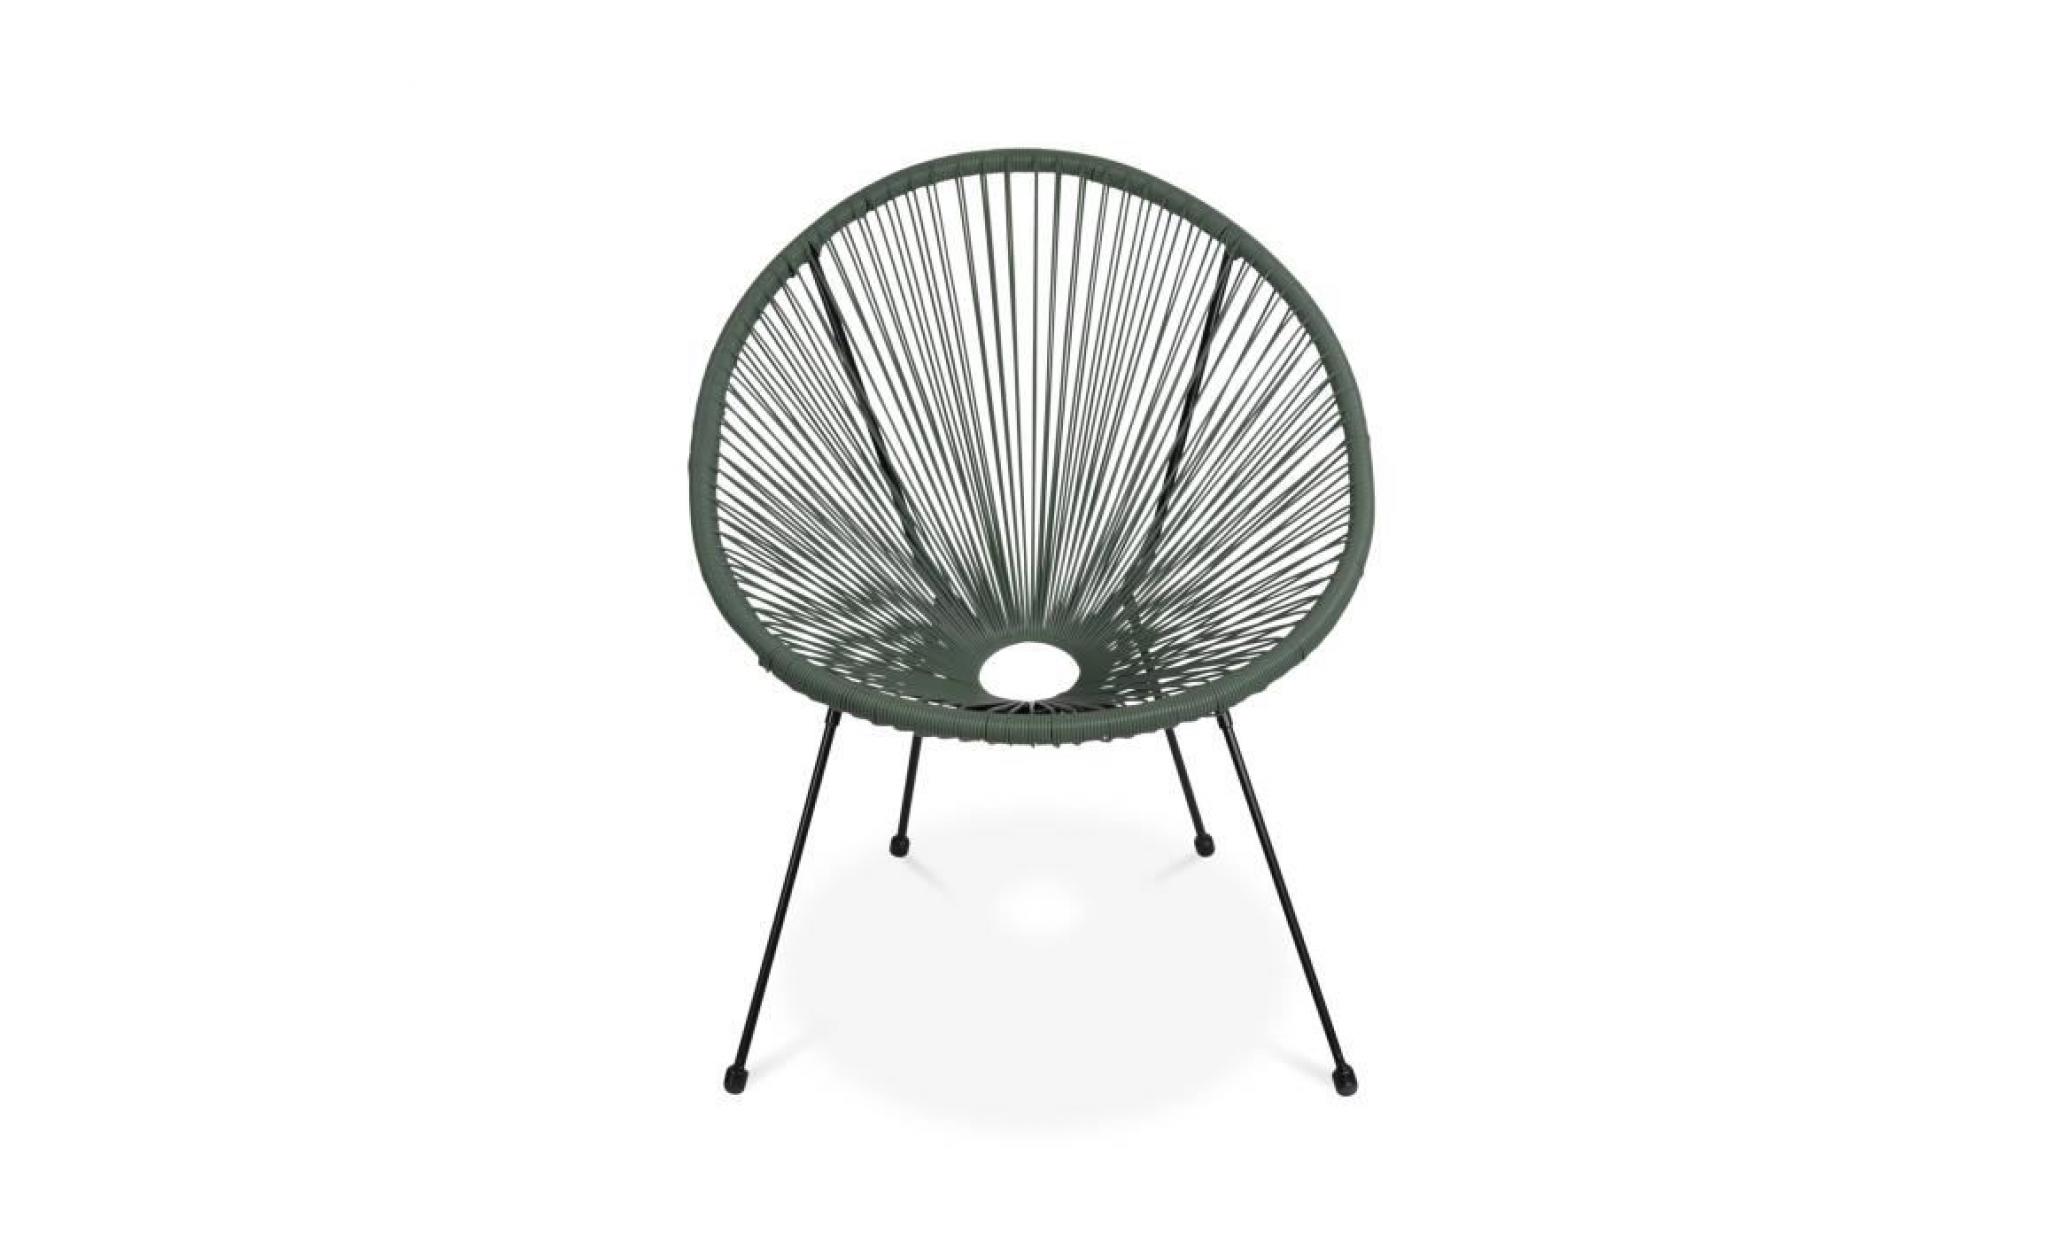 lot de 2 fauteuils design oeuf   acapulco vert de gris   fauteuils 4 pieds design rétro, cordage plastique, intérieur / extérieur pas cher